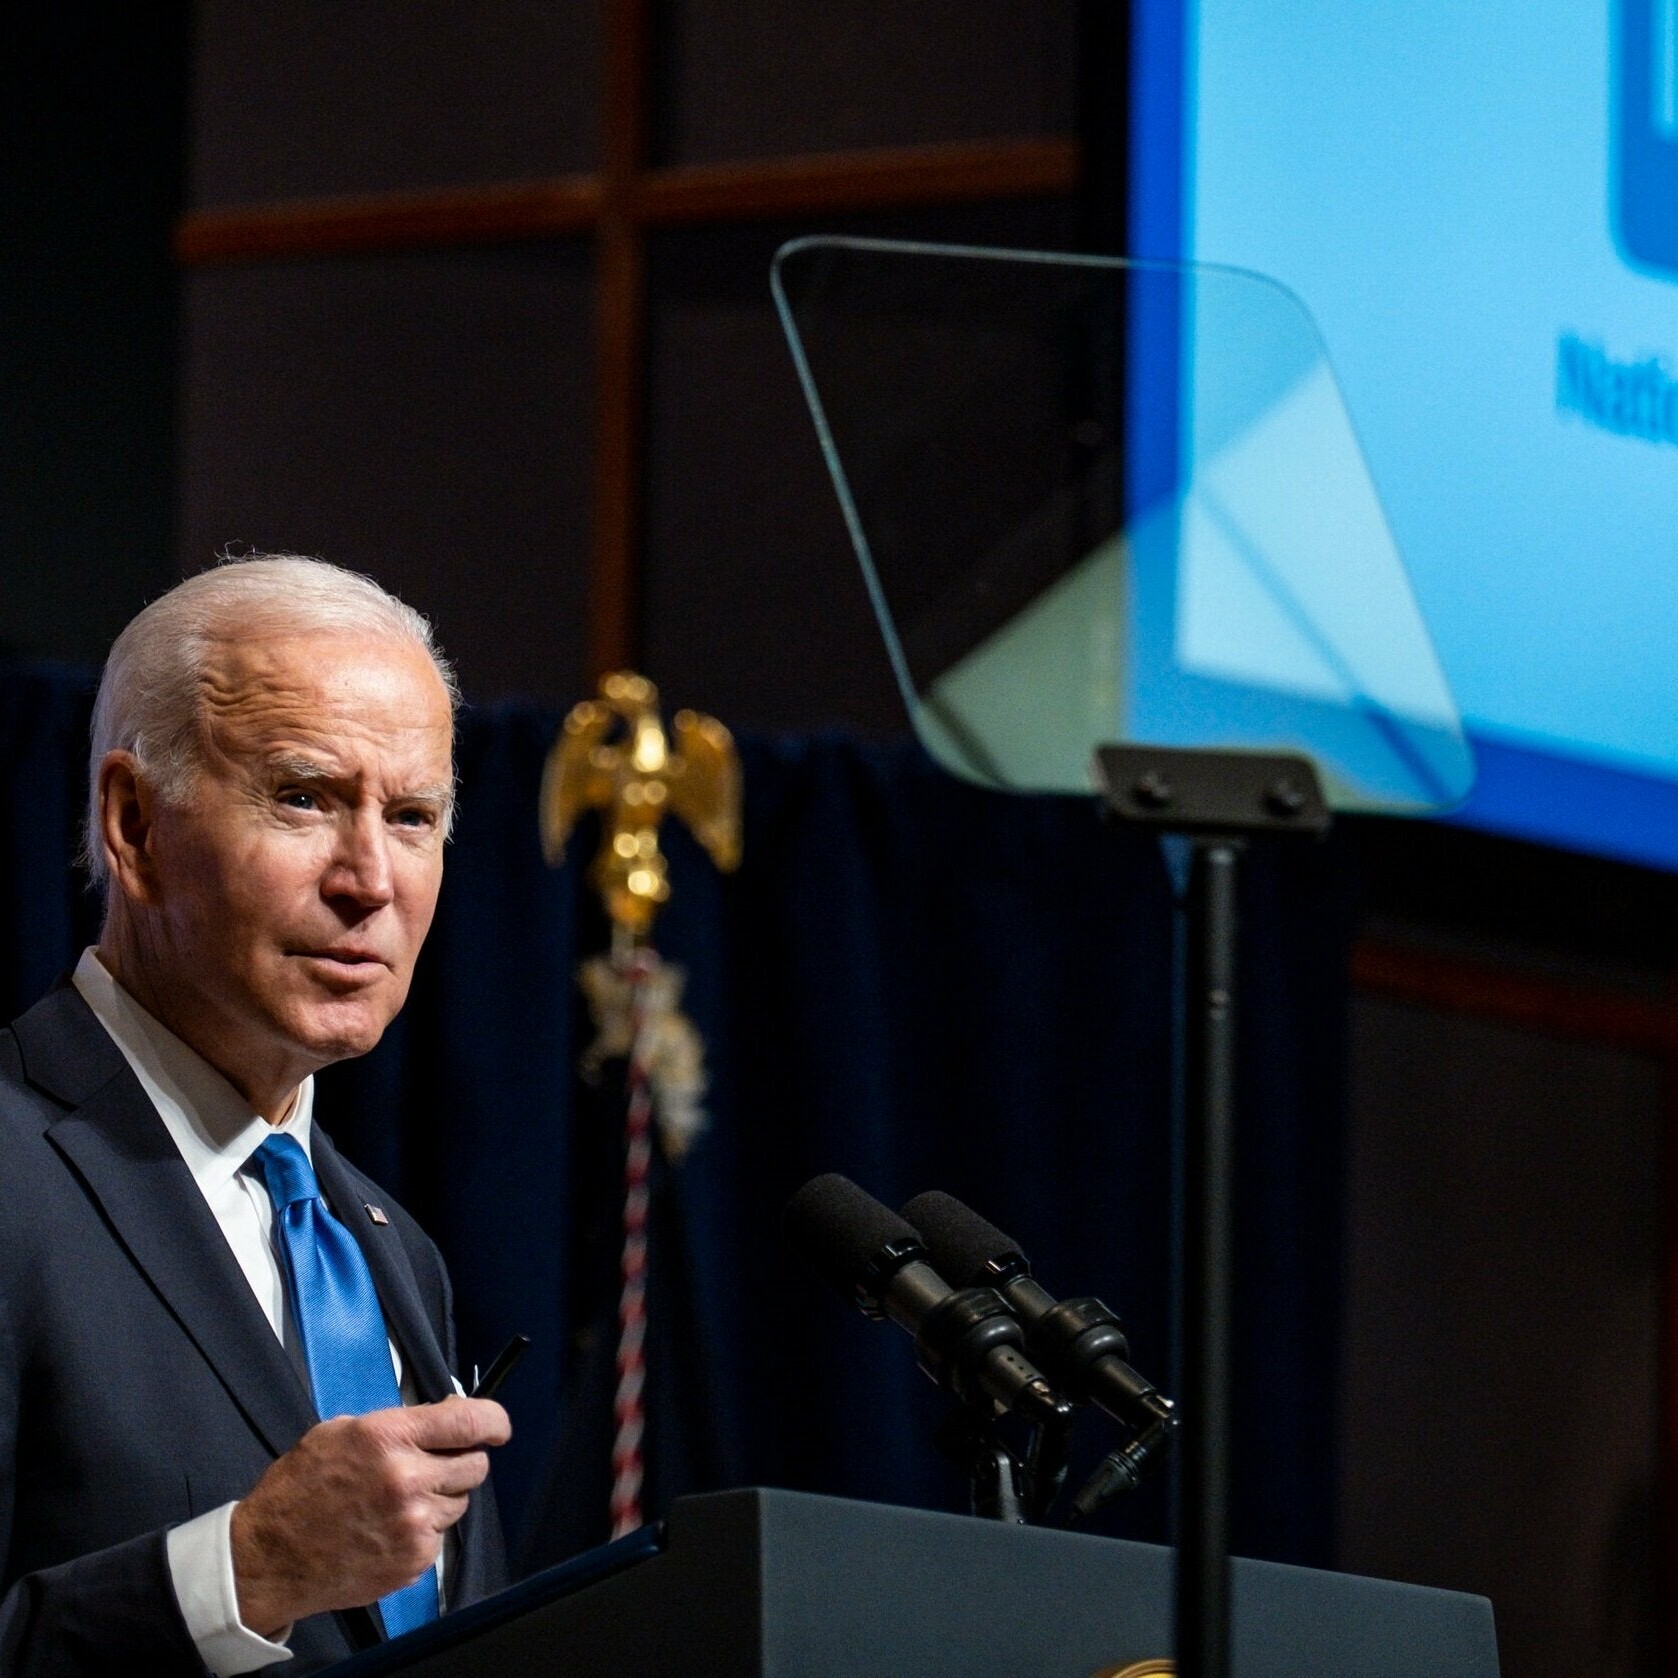 President Joe Biden using PresenterTek